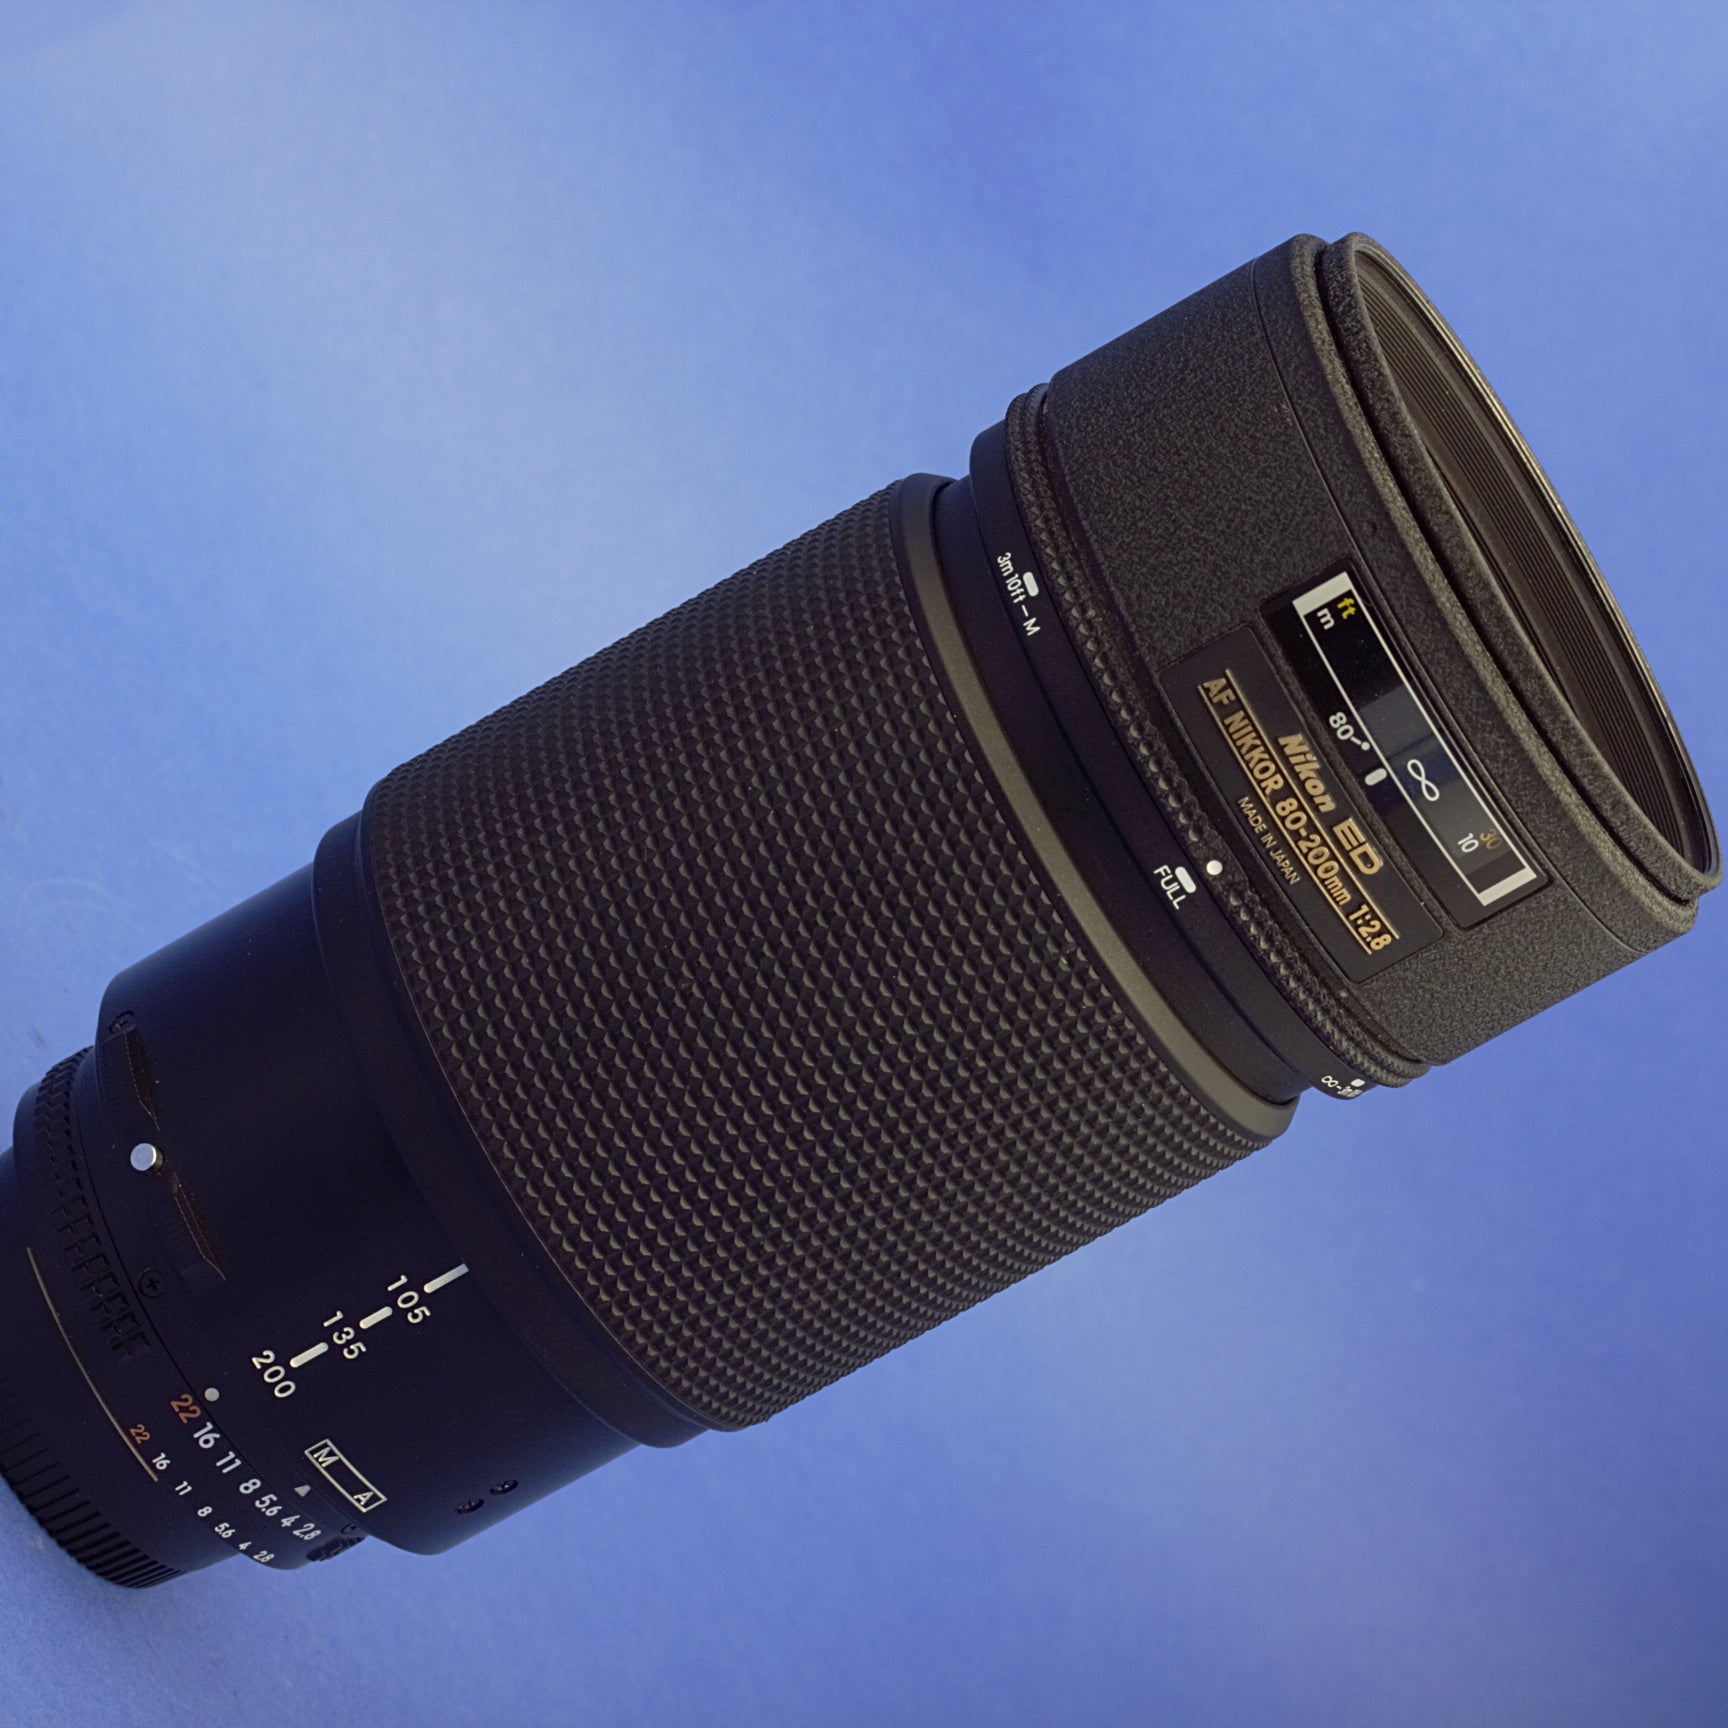 Nikon AF Nikkor 80-200mm 2.8 Push Pull Lens